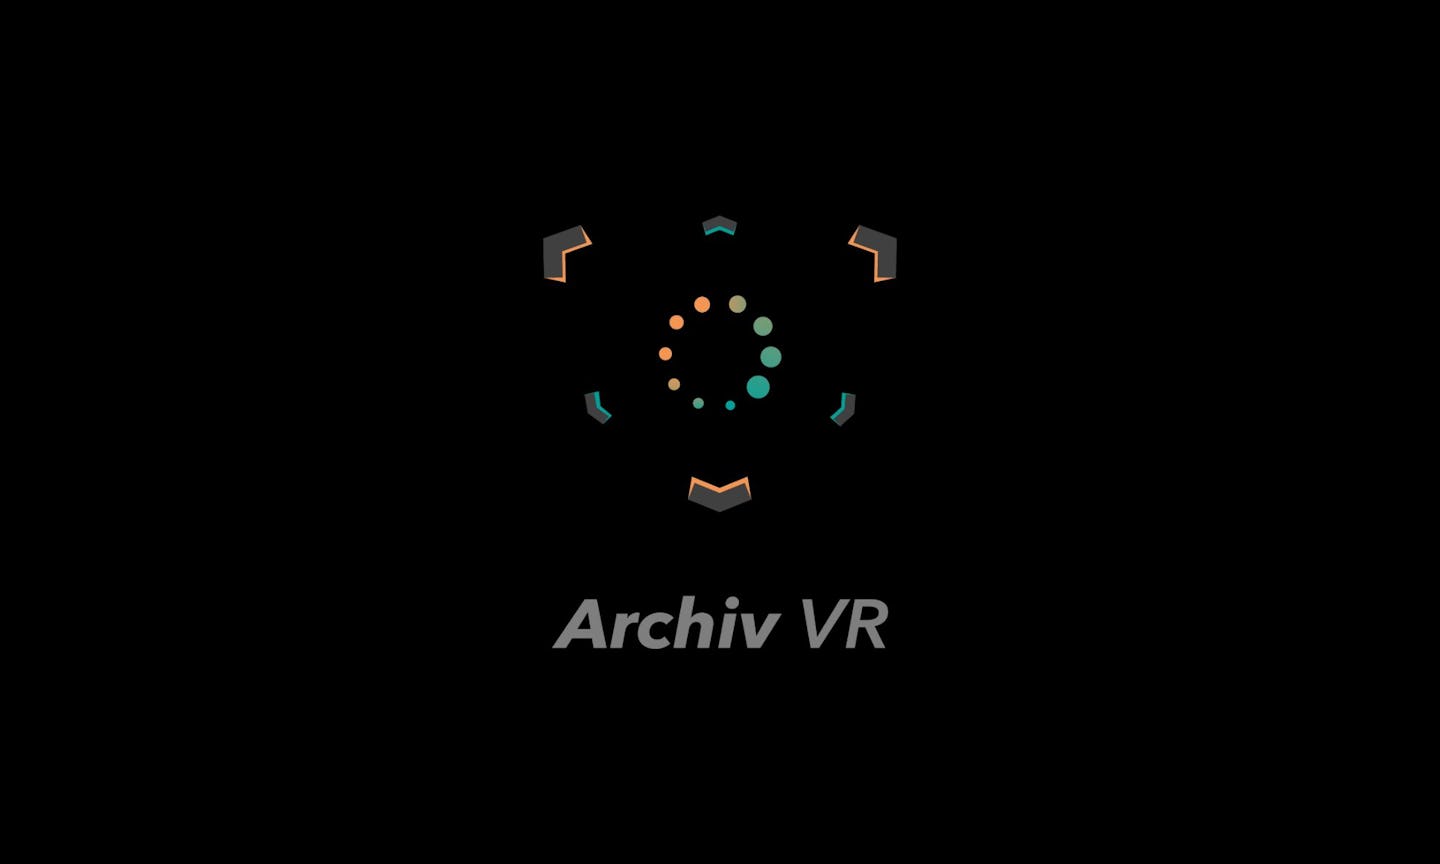 Archiv VR